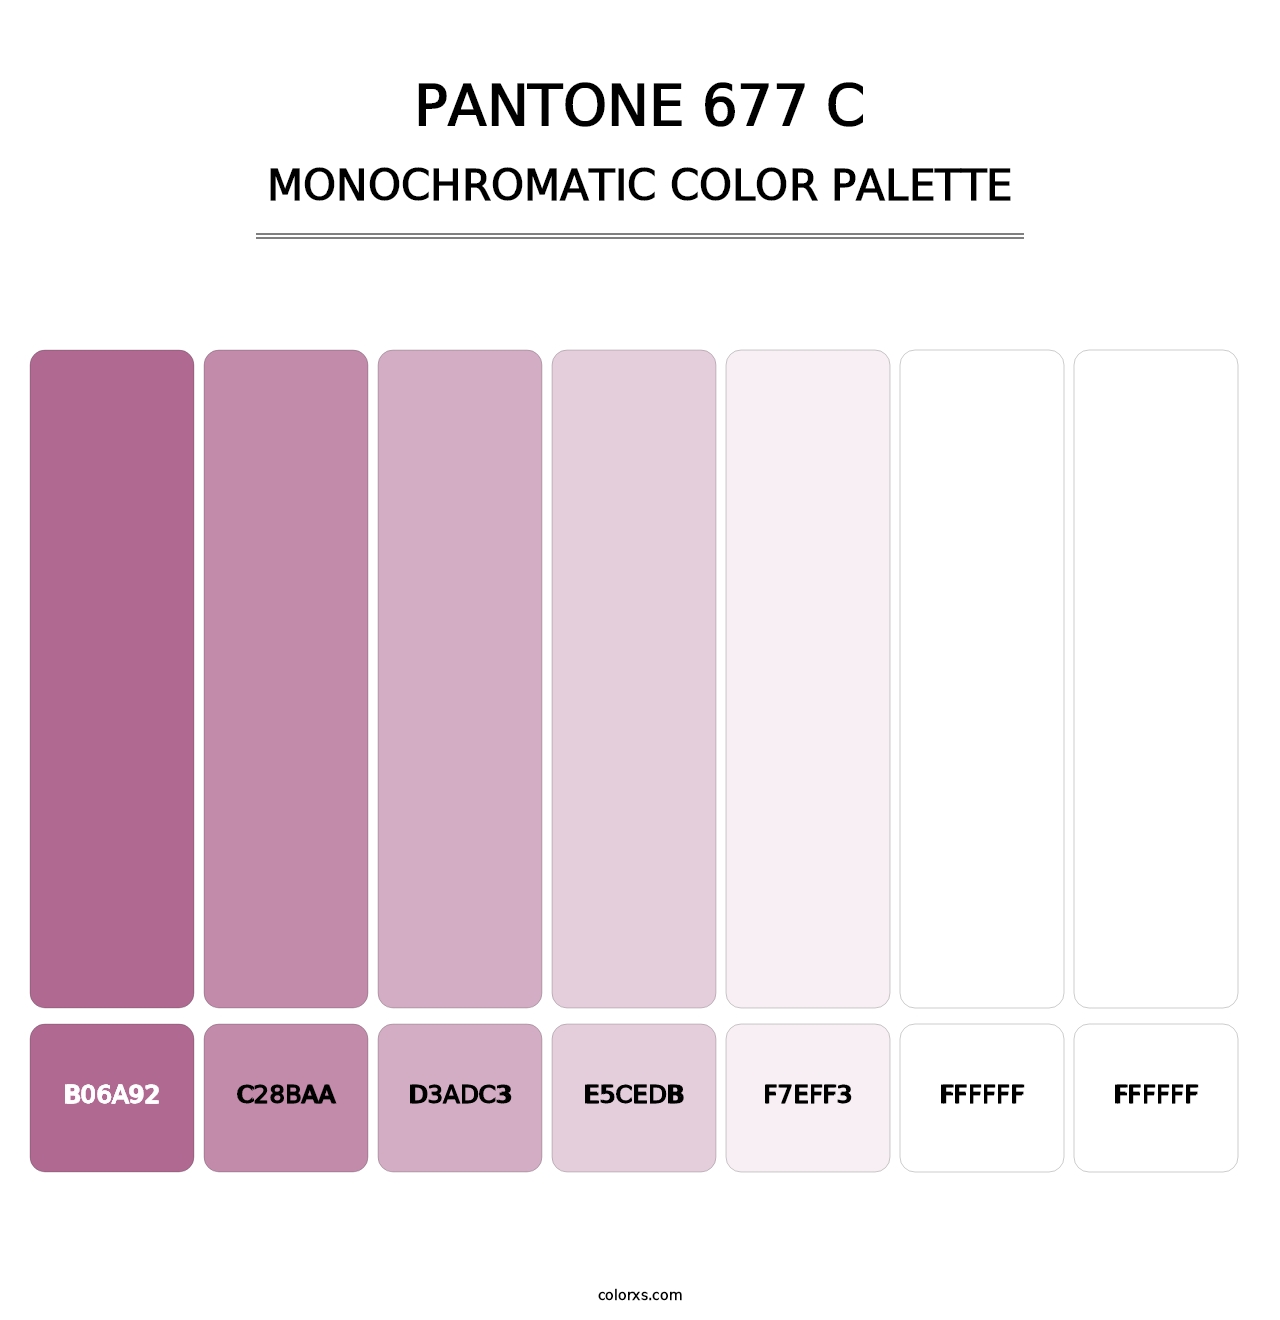 PANTONE 677 C - Monochromatic Color Palette